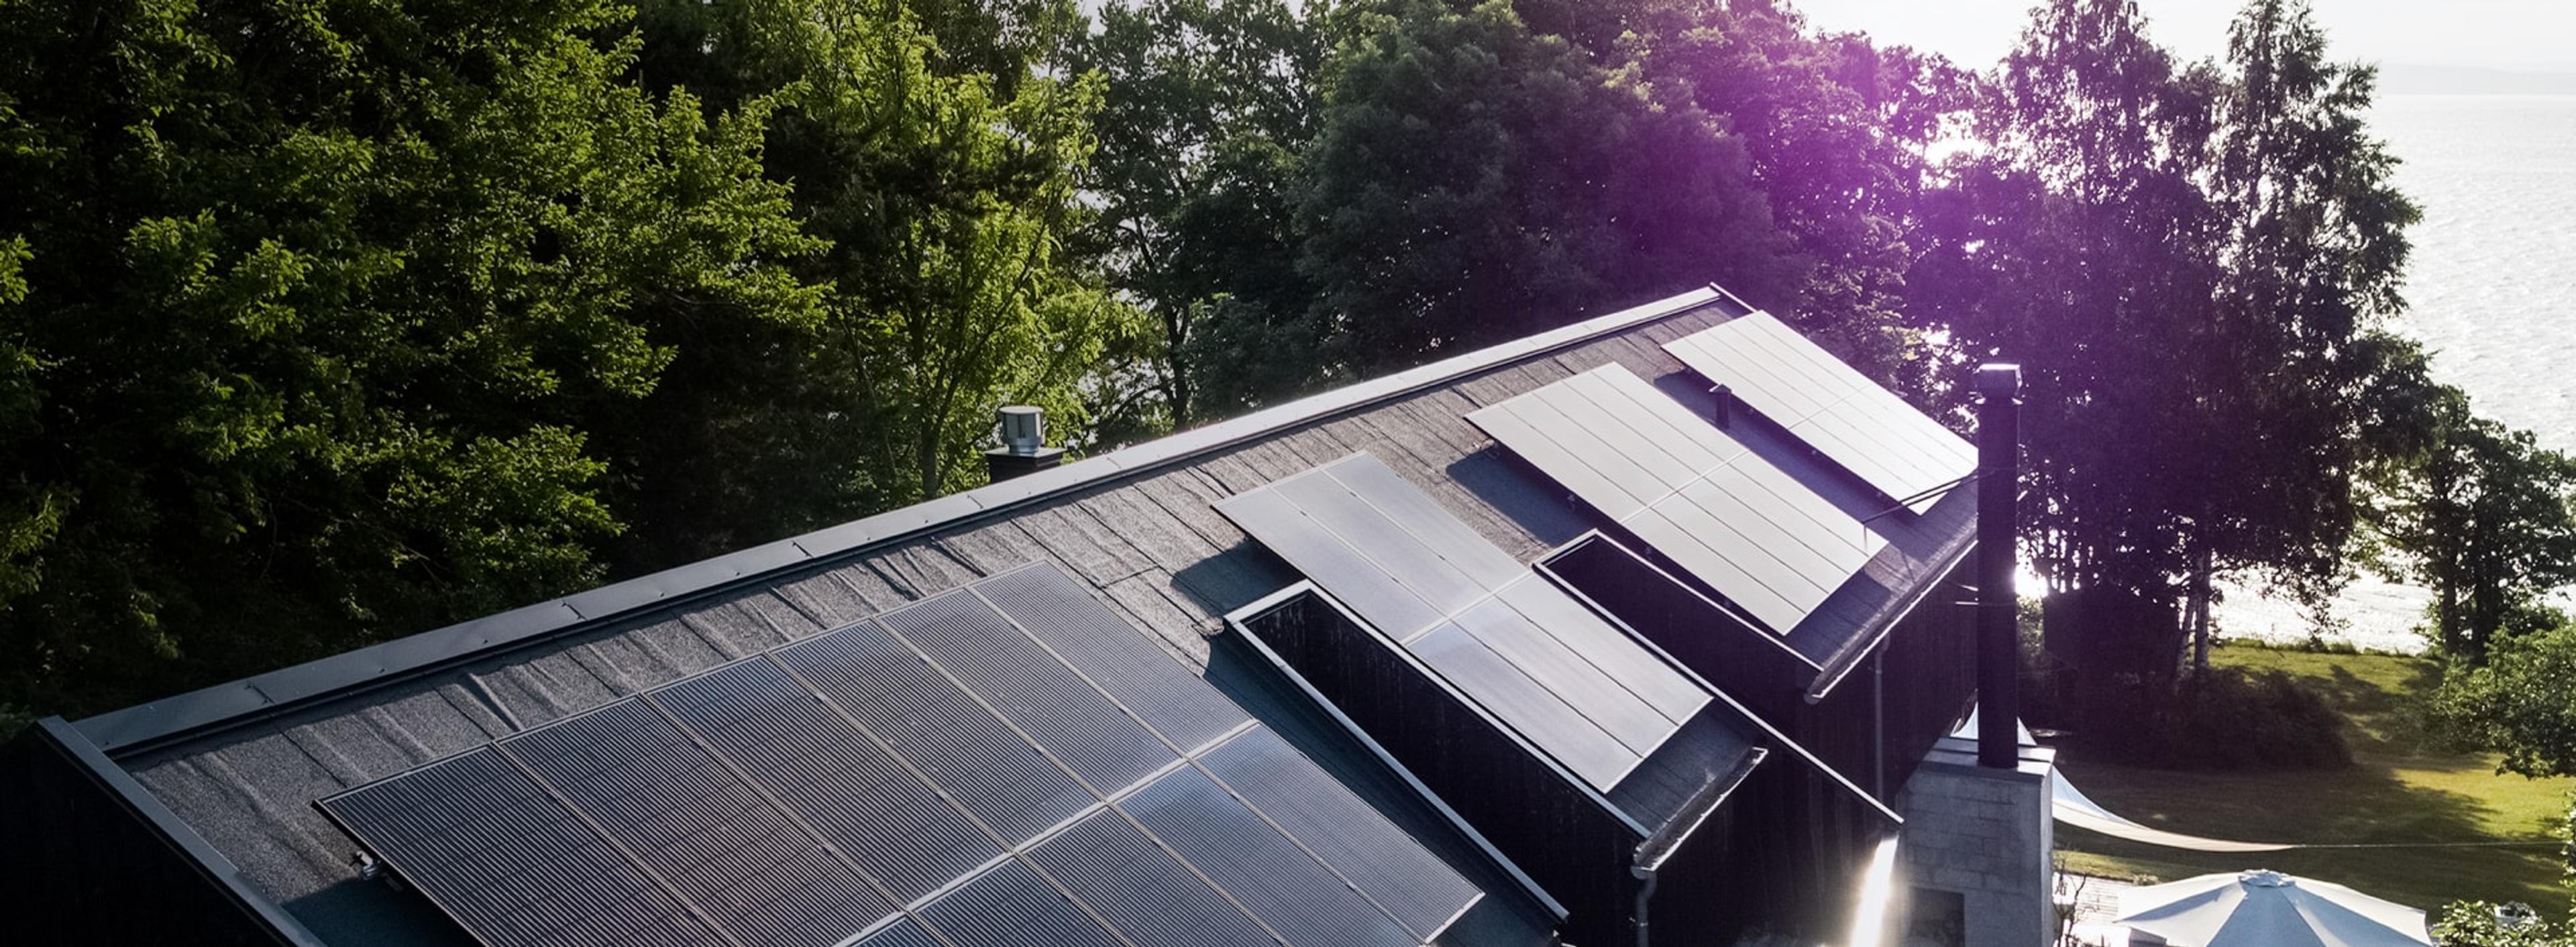 et svart tak med installerte solcellepaneler